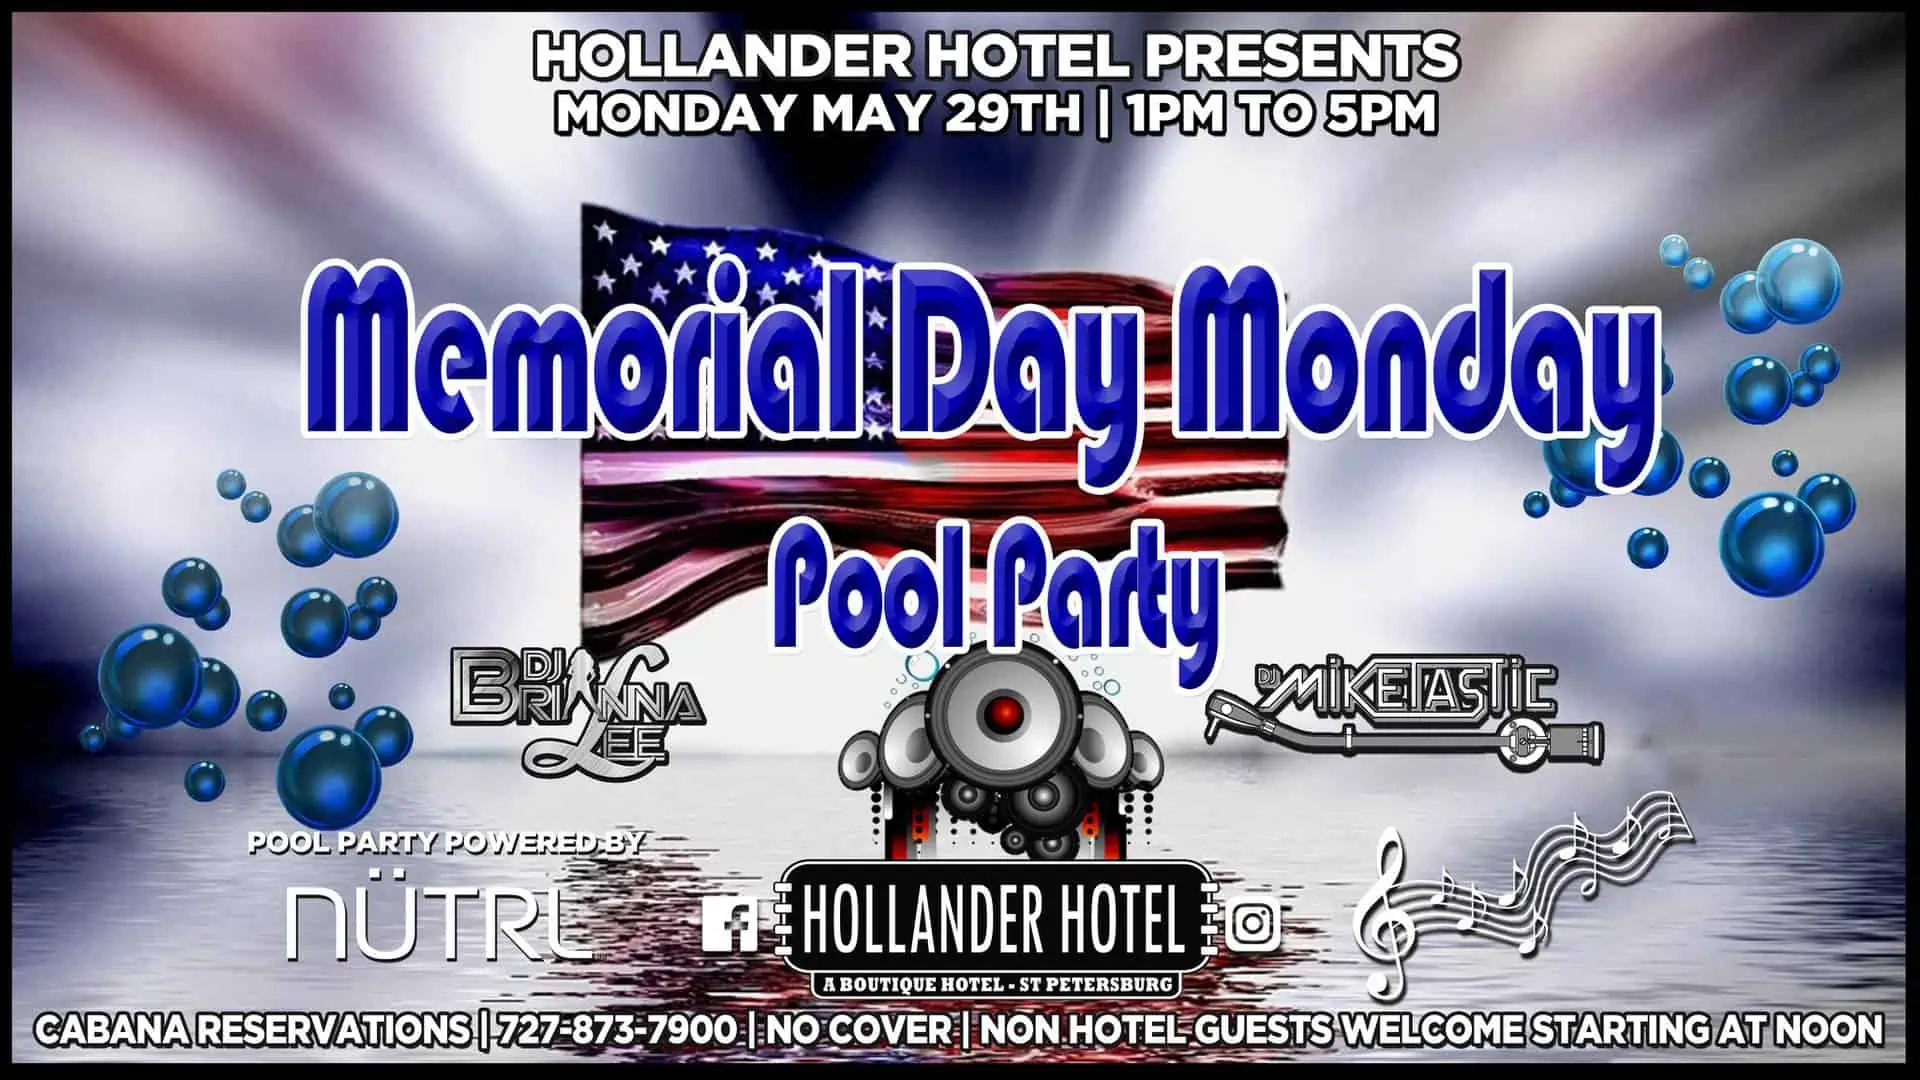 Hollander Hotel Memorial Day Pool Party